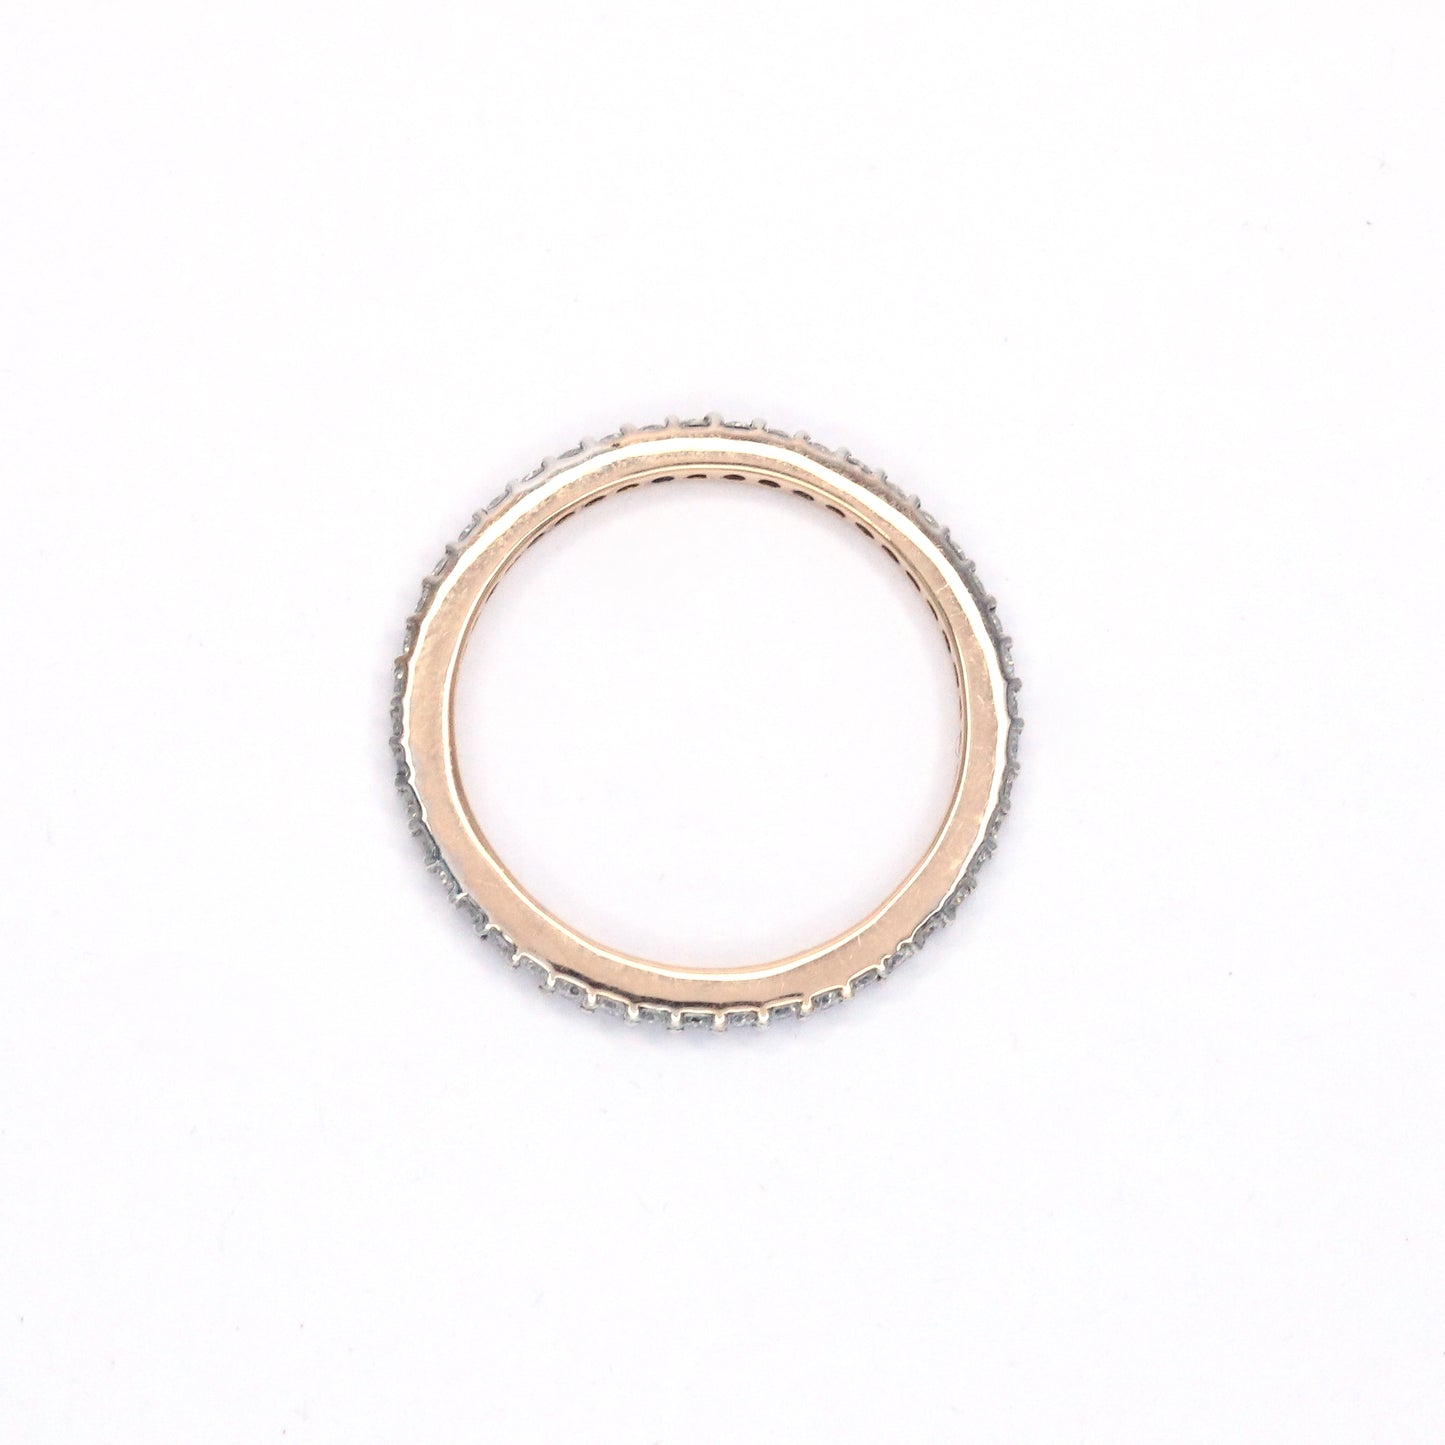 Manya unique ring design